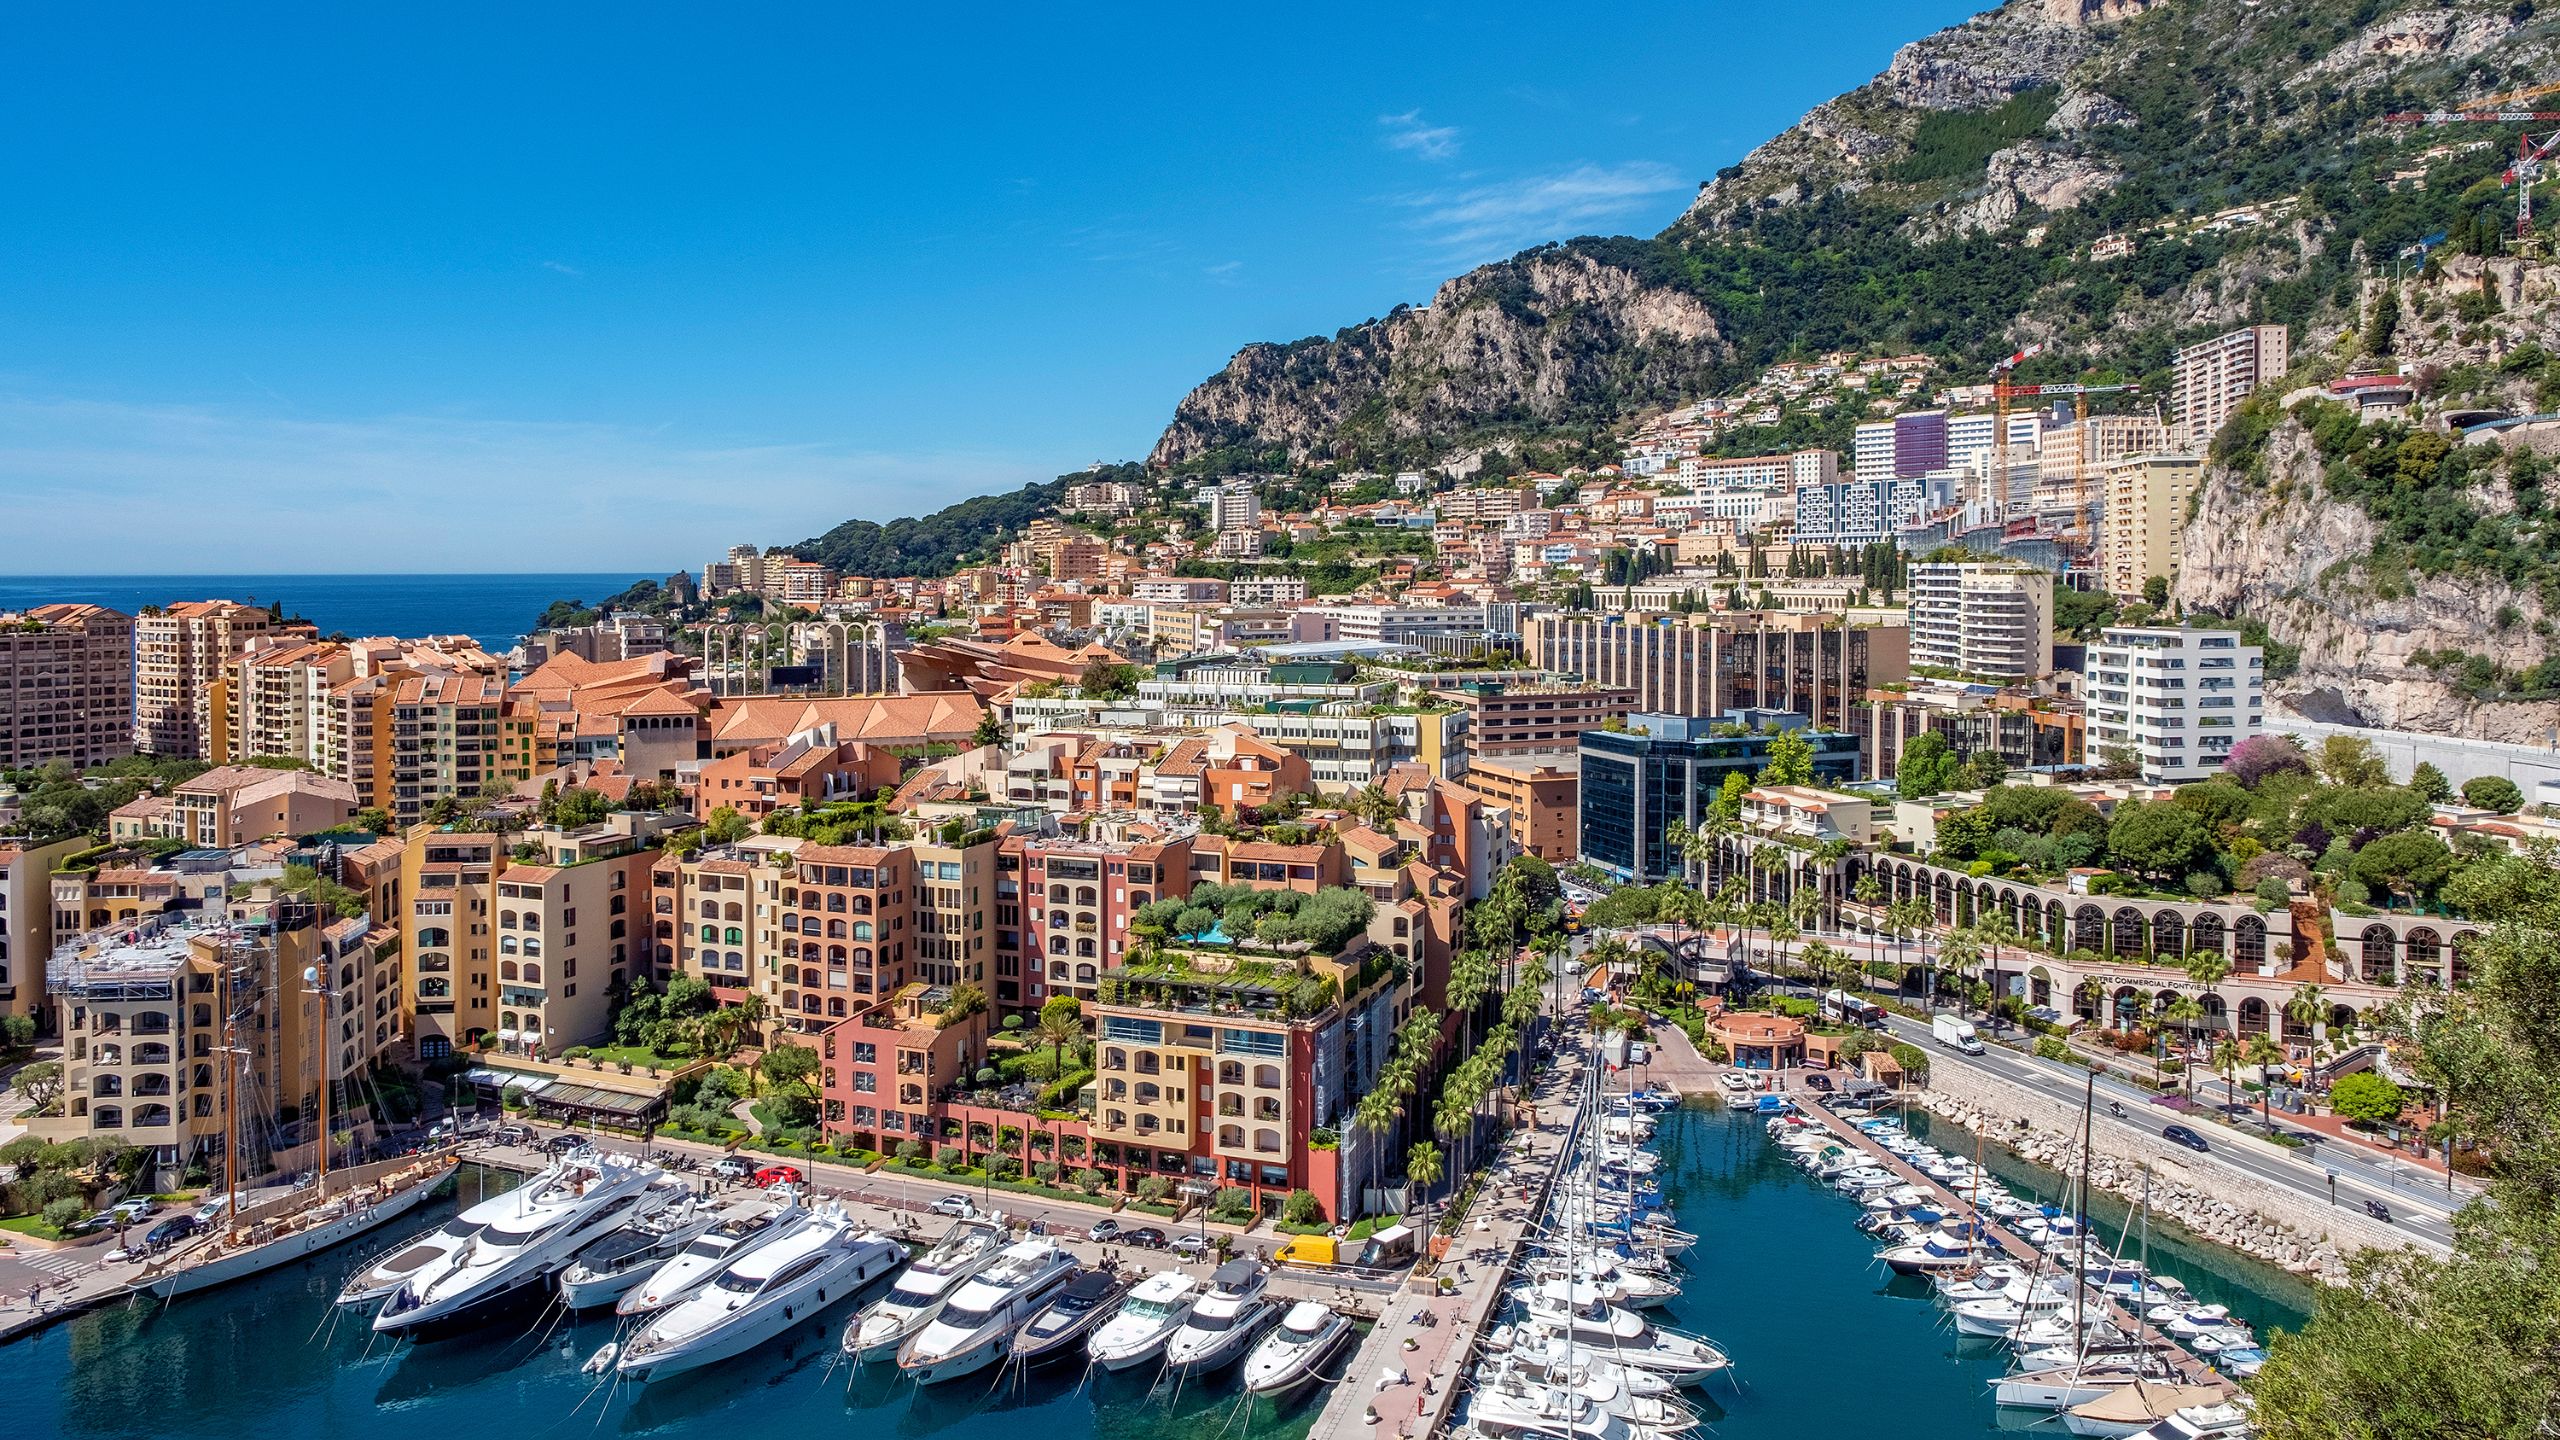 La ville de Monaco